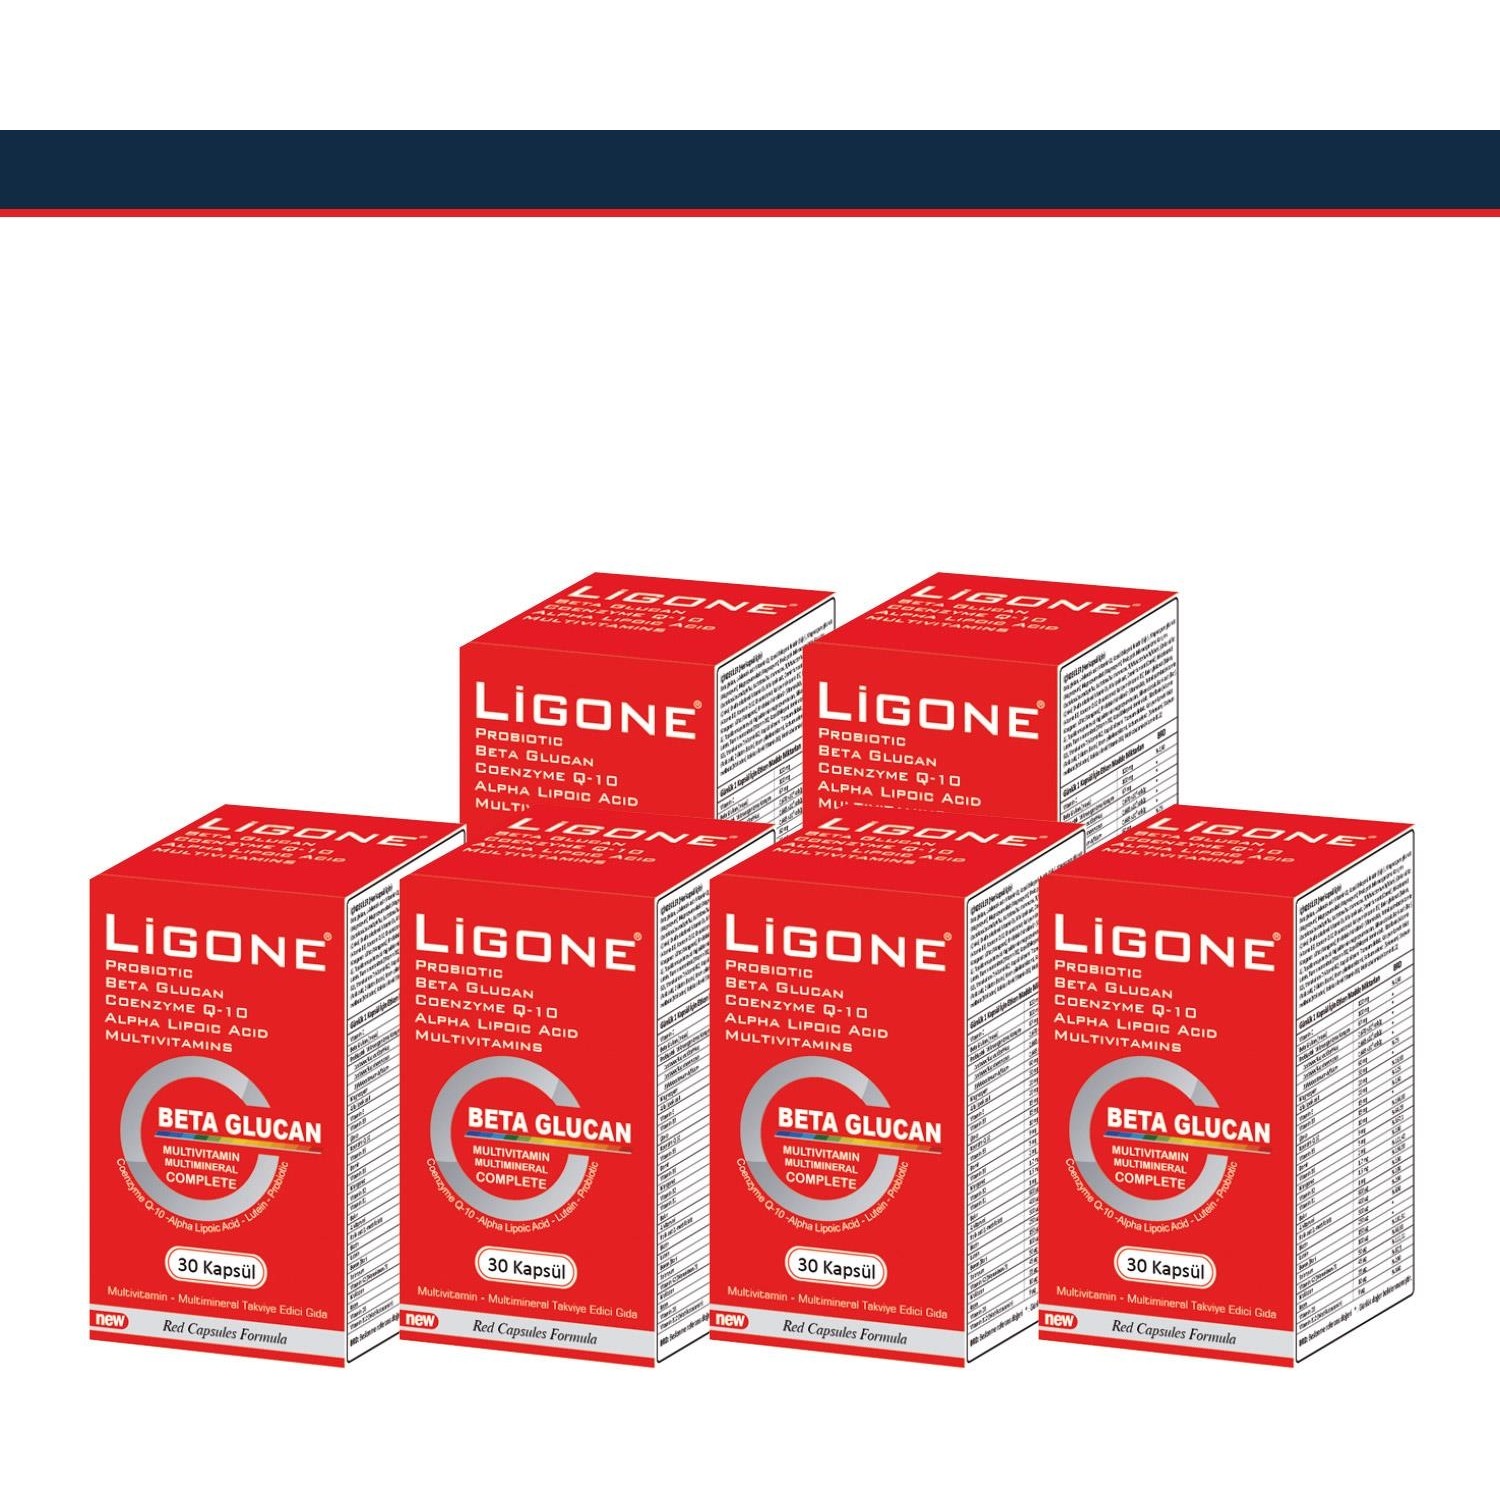 Пищевая добавка Newdrog Ligone Beta Glucan, 6 упаковок по 30 капсул пищевая добавка newdrog ligone beta glucan 30 капсул мультивитаминный сироп ligone kids 150 мл